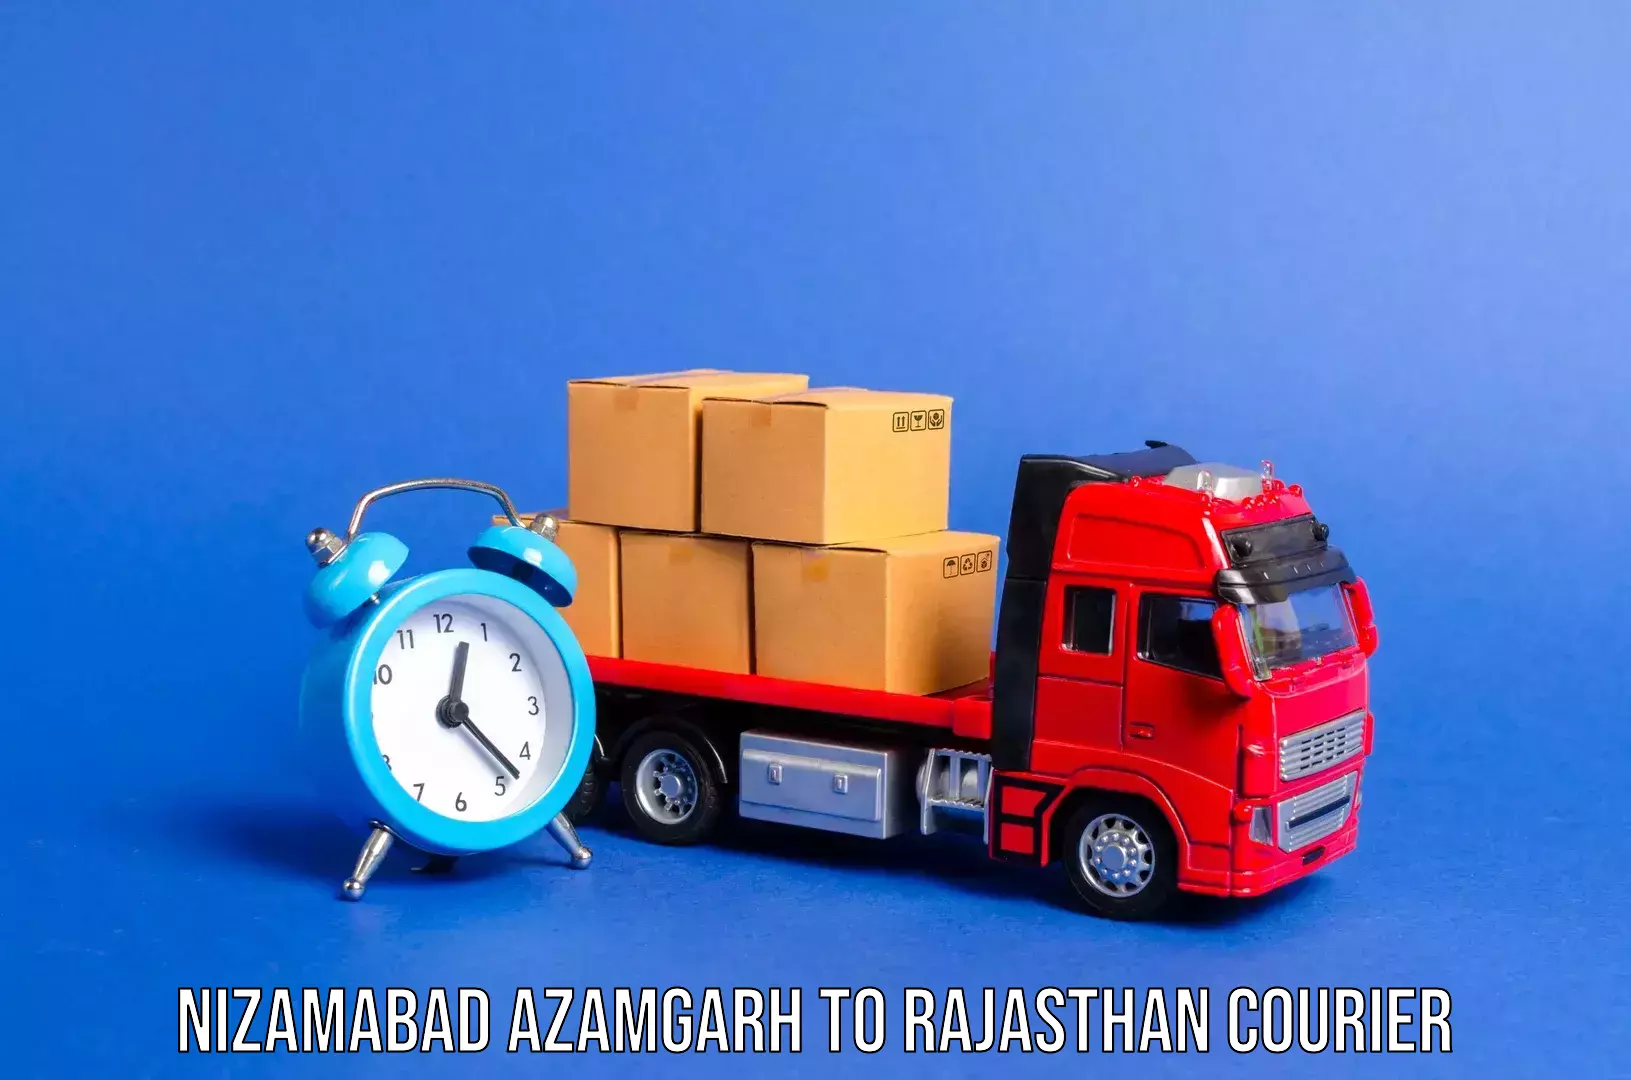 Luggage transport operations Nizamabad Azamgarh to Udaipur